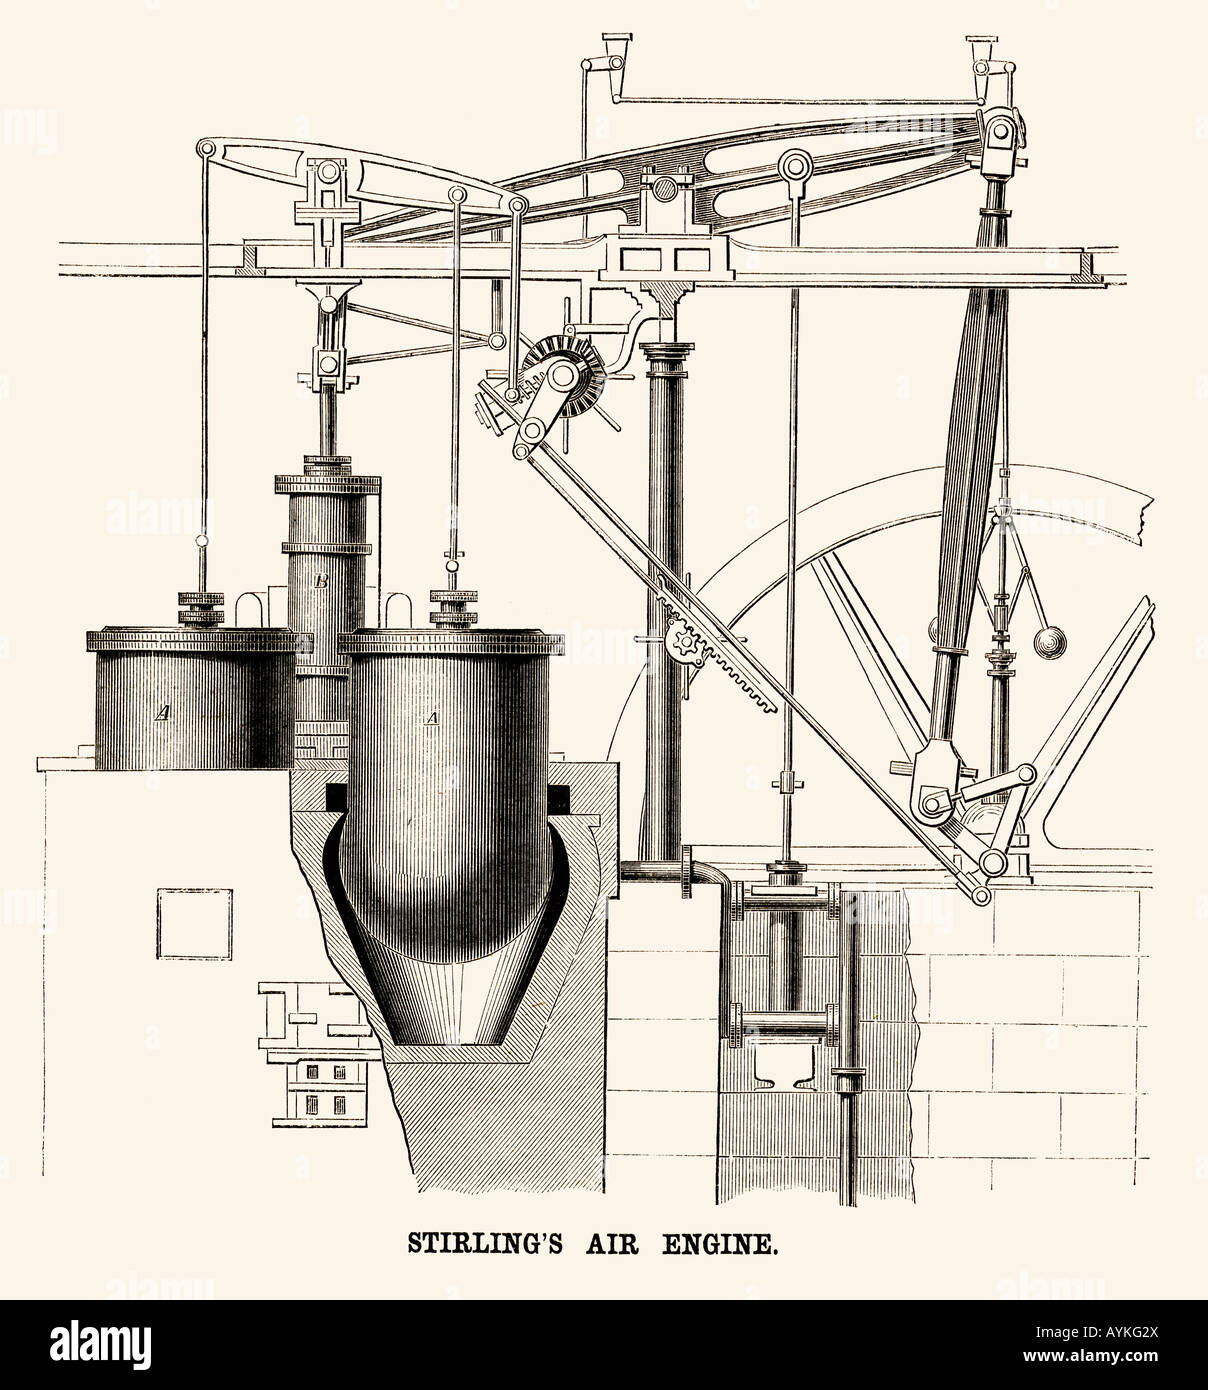 El aire del motor Stirling Foto de stock